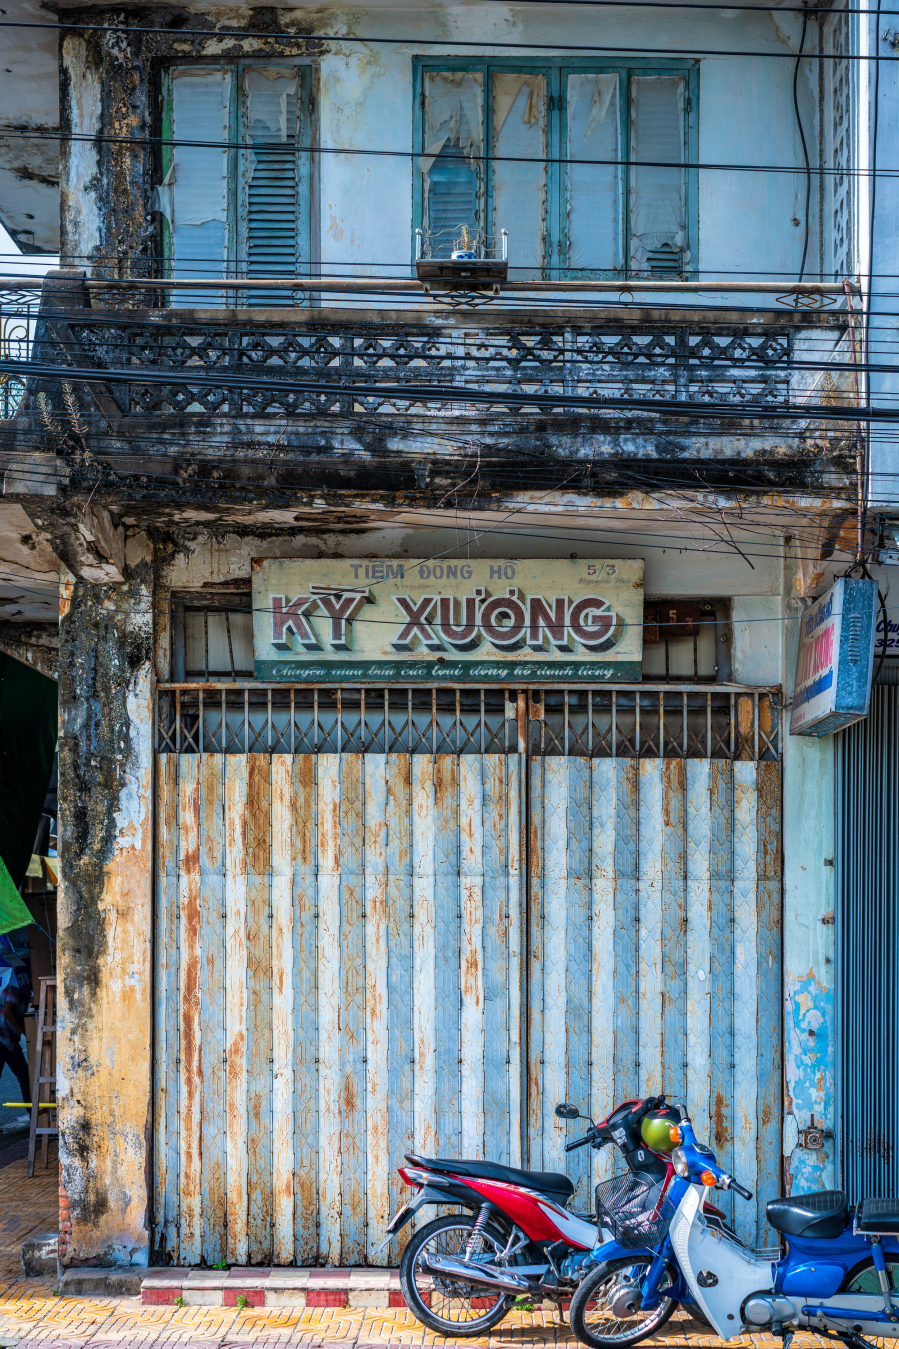 Những ngôi nhà với phong cách kiến trúc hiện đại cùng những bảng hiệu vẽ tay là ví dụ cho thẩm mỹ đa dạng của người Việt